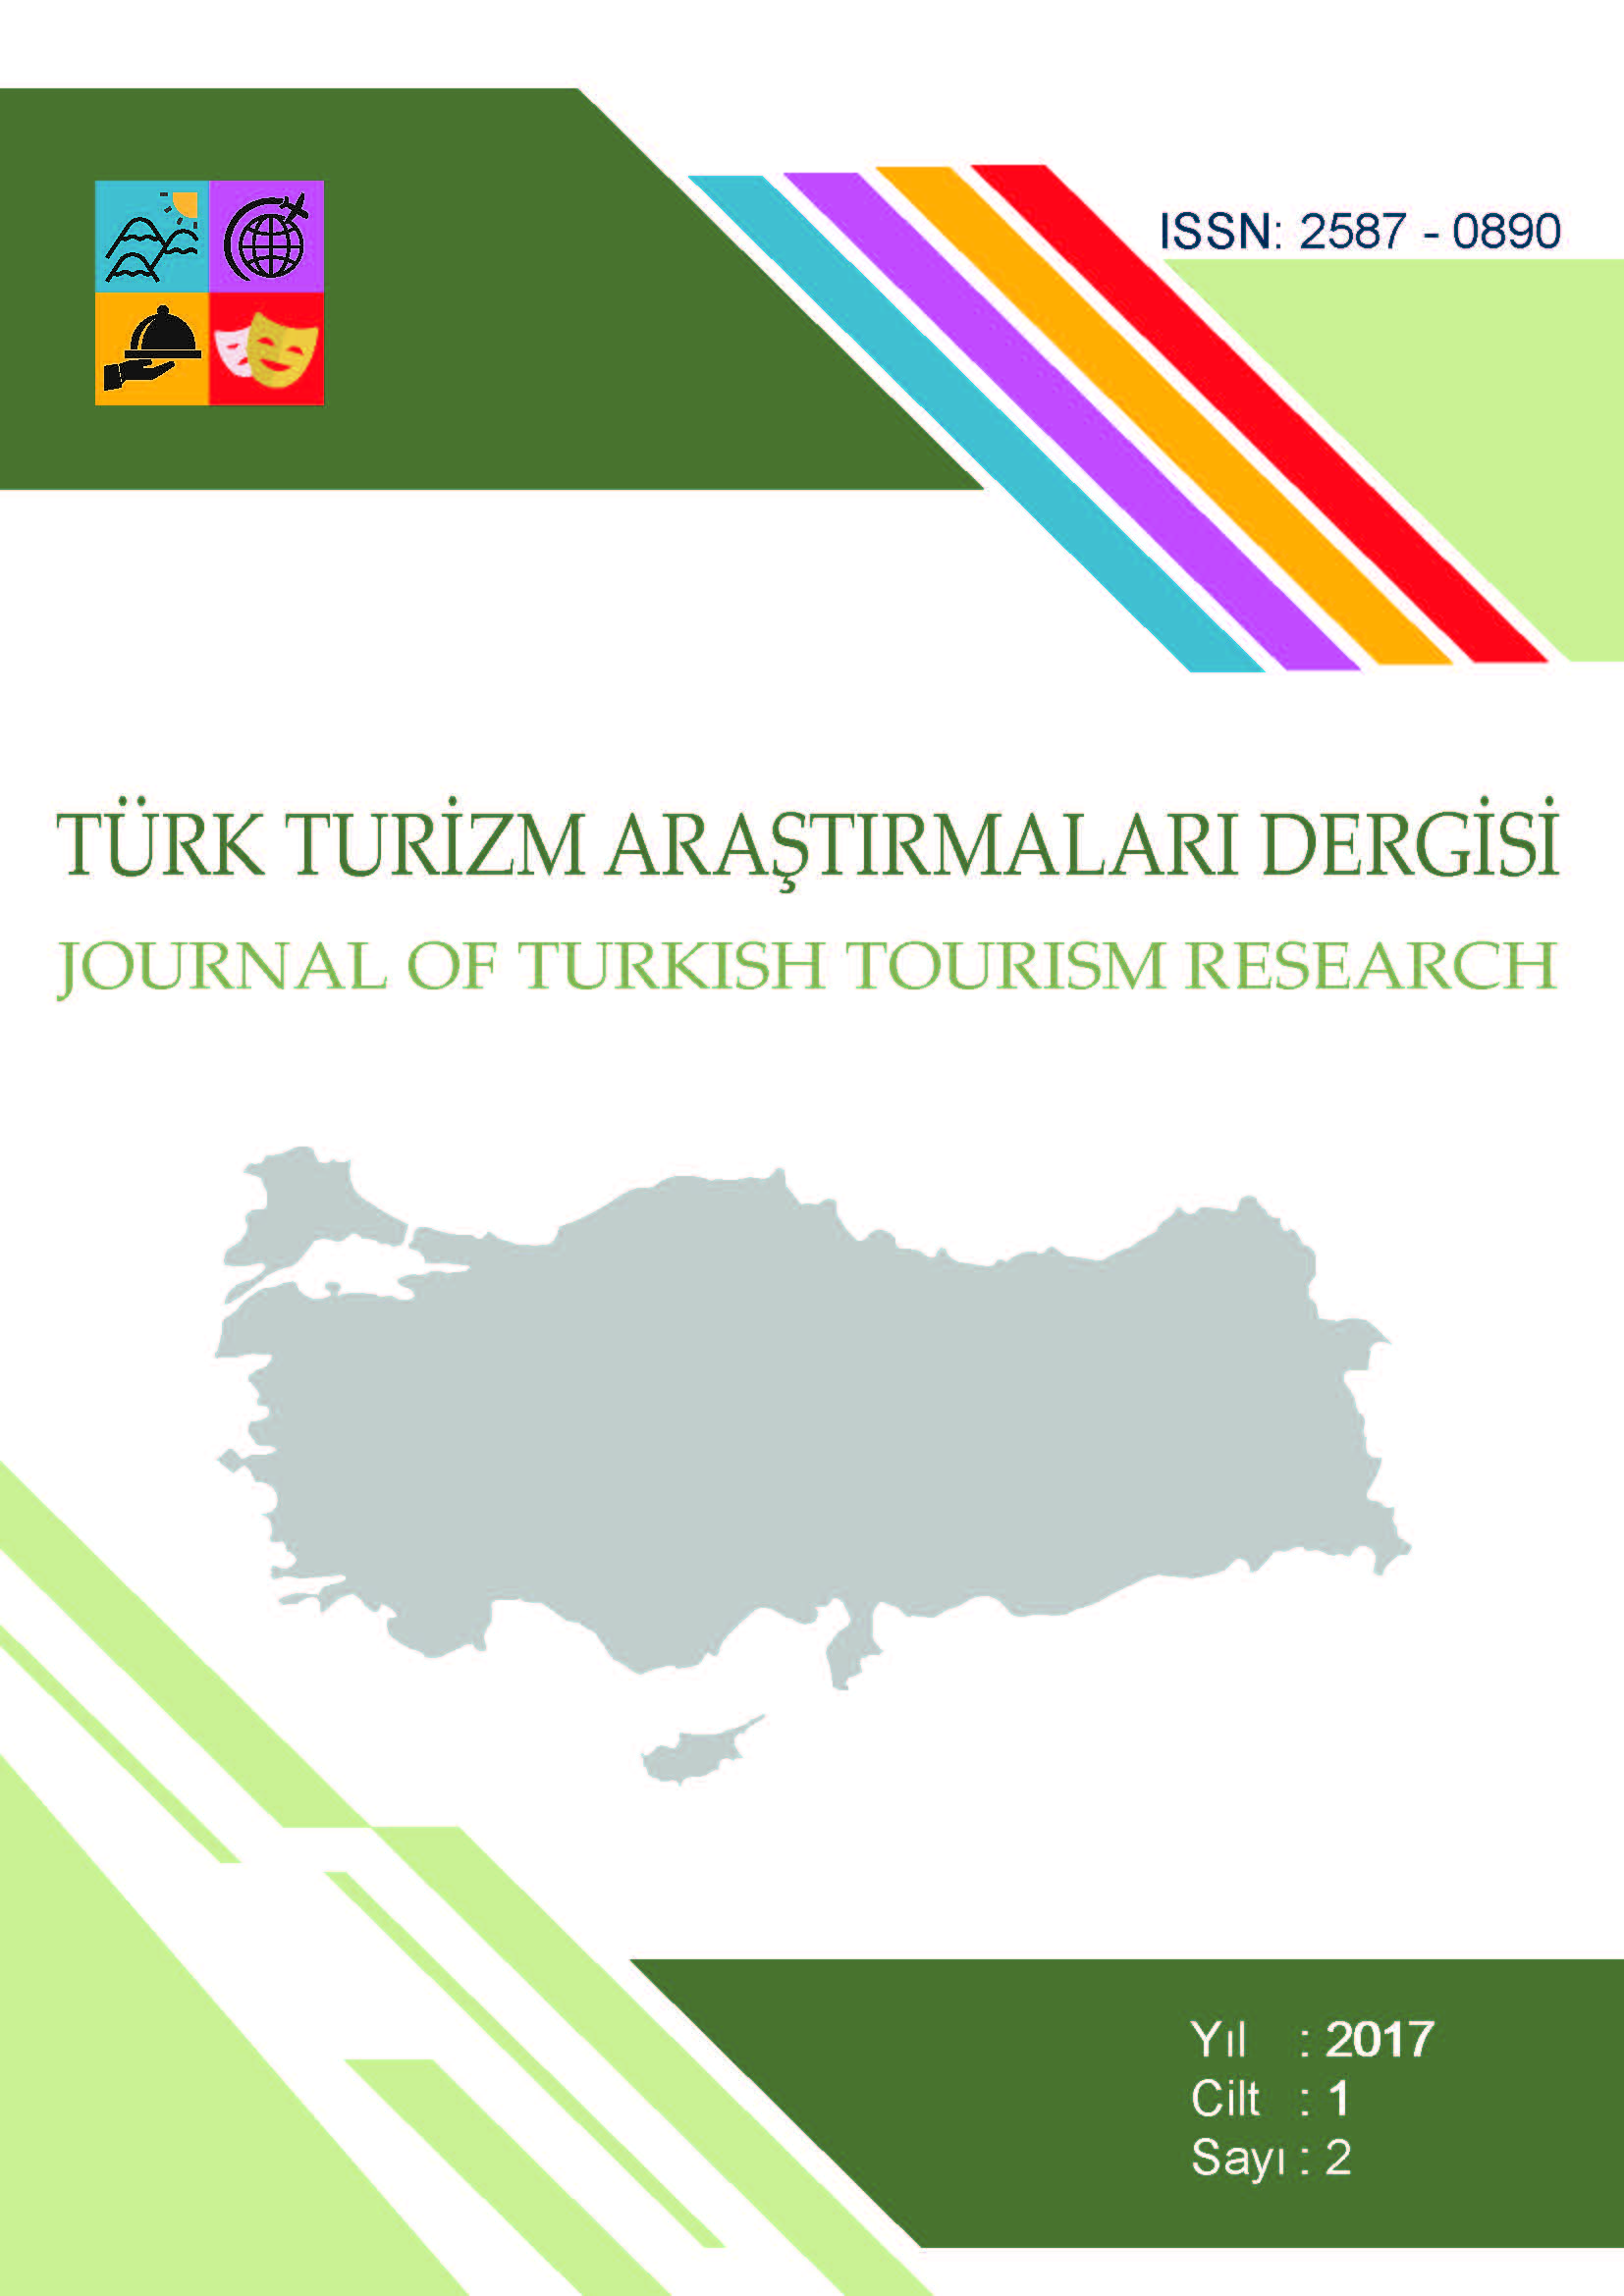 Bitlis İlinin Kalkınmasında Turizmin Rolünün Yerel Halkın Demografik Özelliklerine Göre Değerlendirilmesi